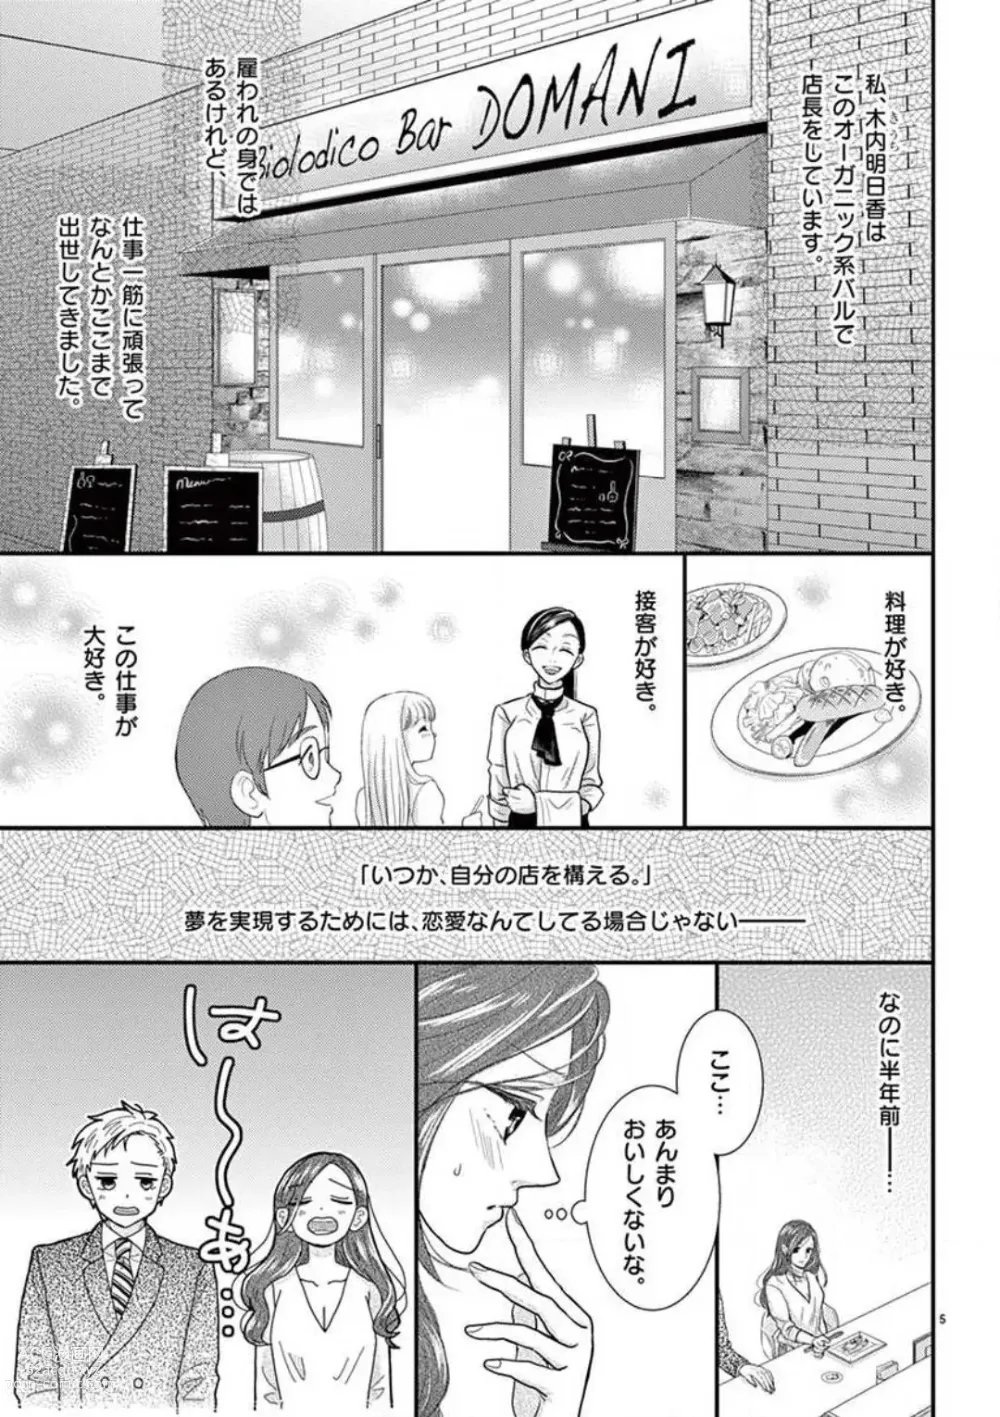 Page 5 of manga Yajū Suitchi ON!〜 Junjō Wanko wa Hageshi Sugi 〜